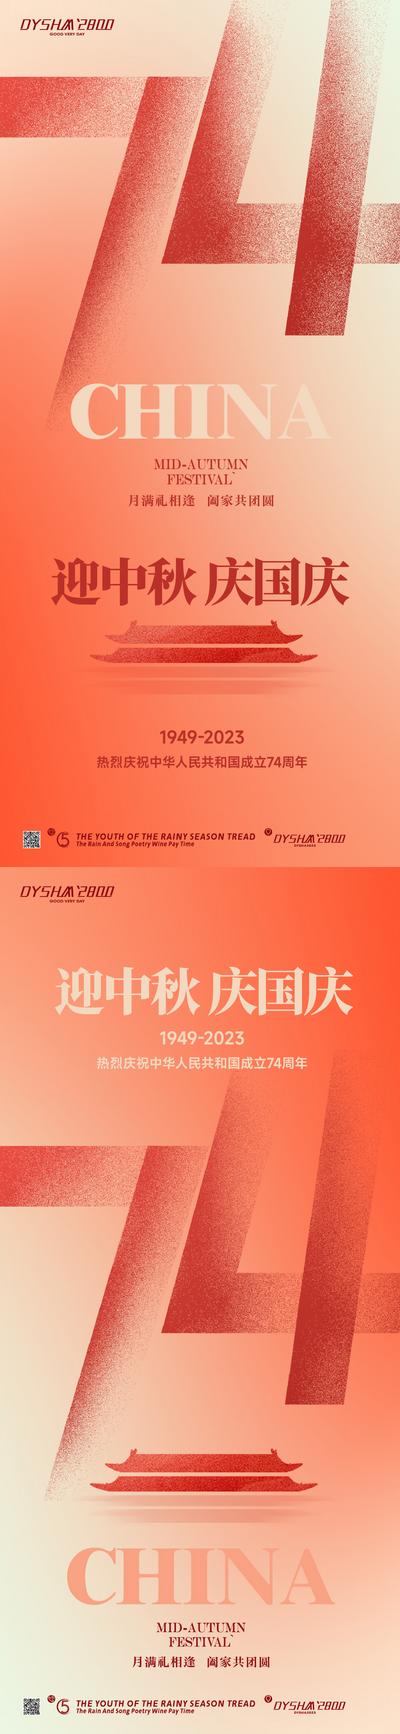 南门网 广告 海报 节日 国庆节 74 周年 双节 数字 国庆